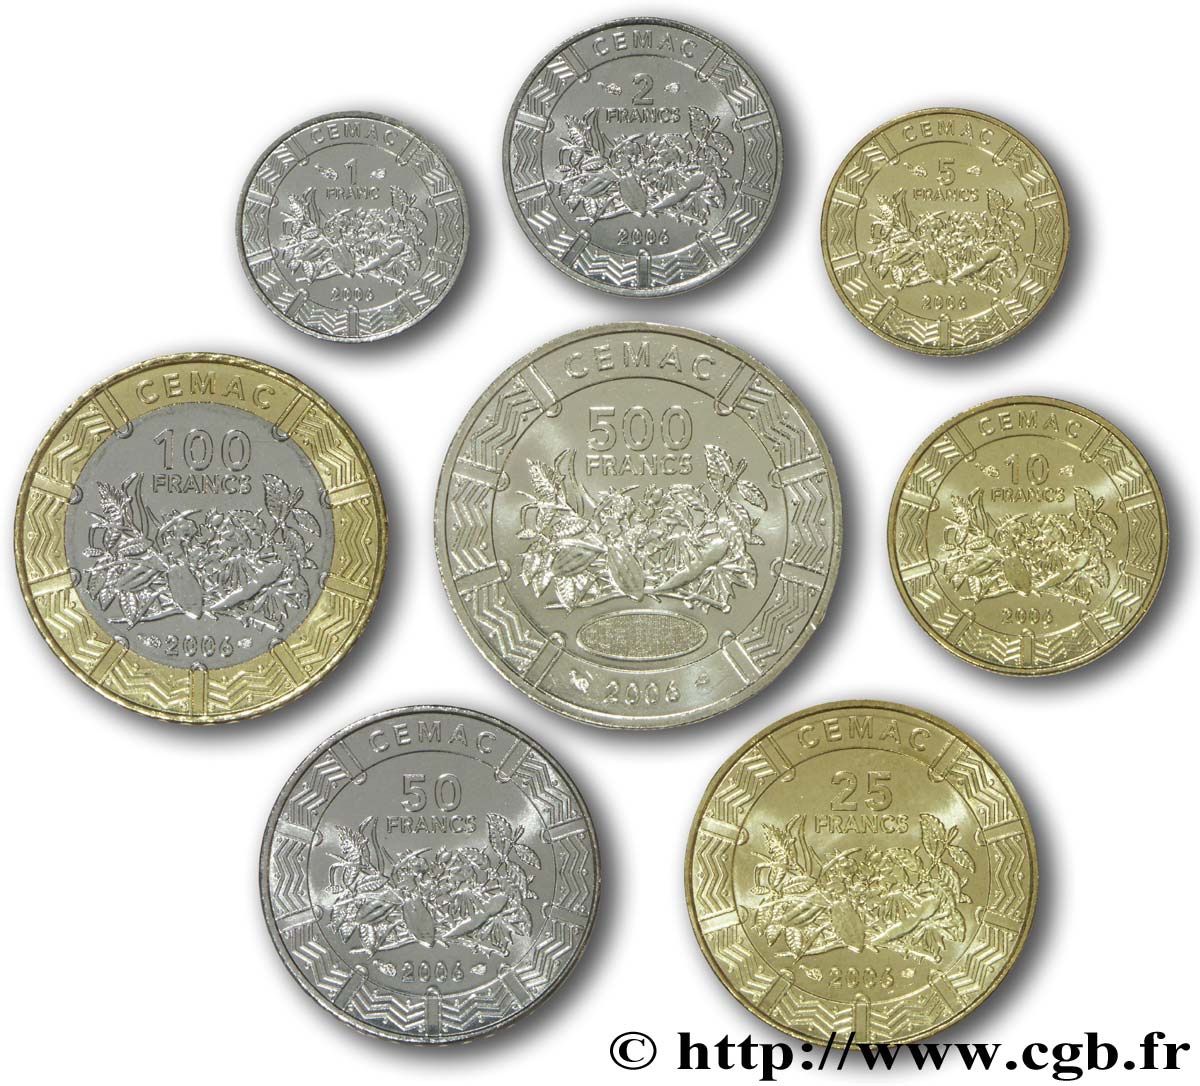 CENTRAL AFRICAN STATES série de 8 monnaies 1, 2, 5, 10, 25, 50, 100 et 500 Francs CEMAC fruits tropicaux 2006 Paris MS 